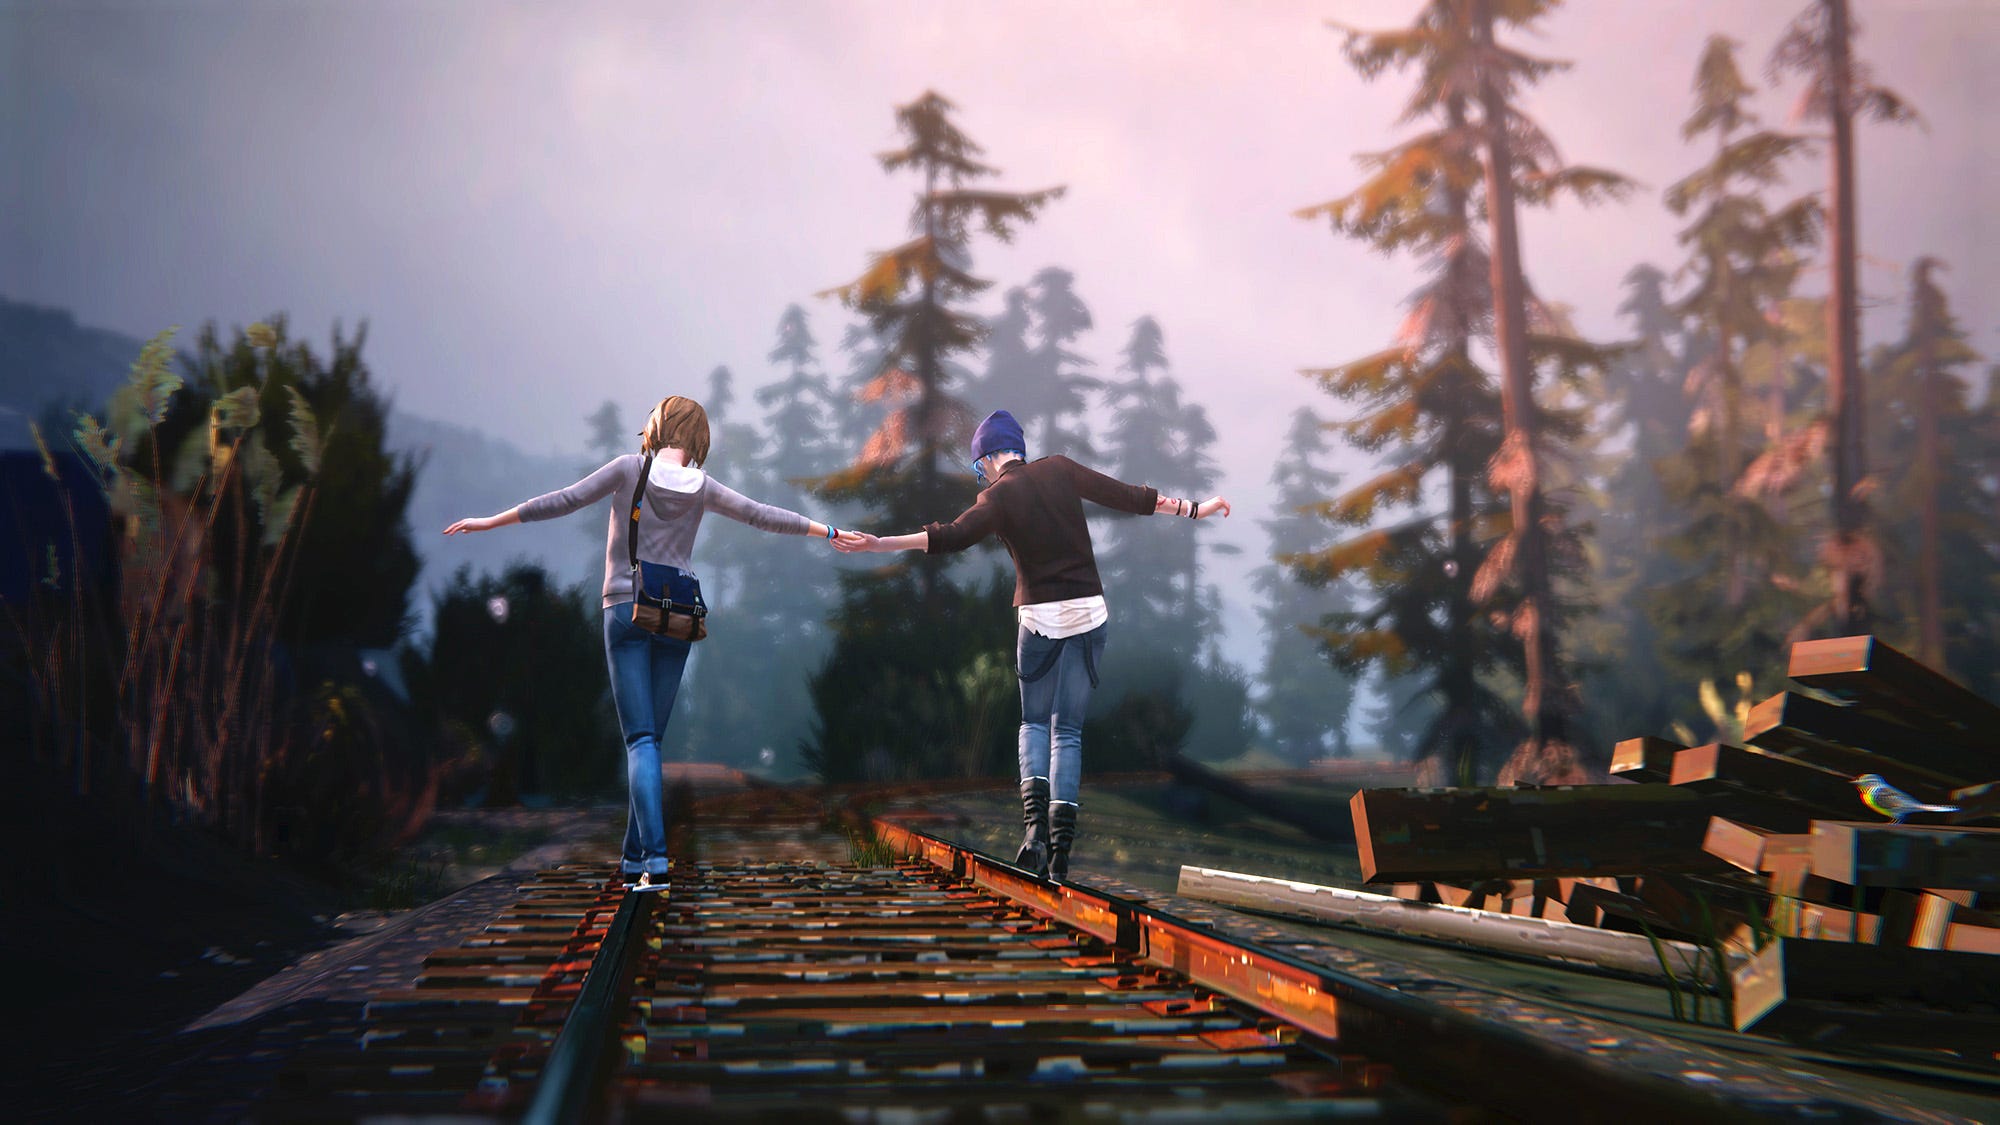 Max et Chloé se tiennent la main en marchant le long d'une voie ferrée rurale.